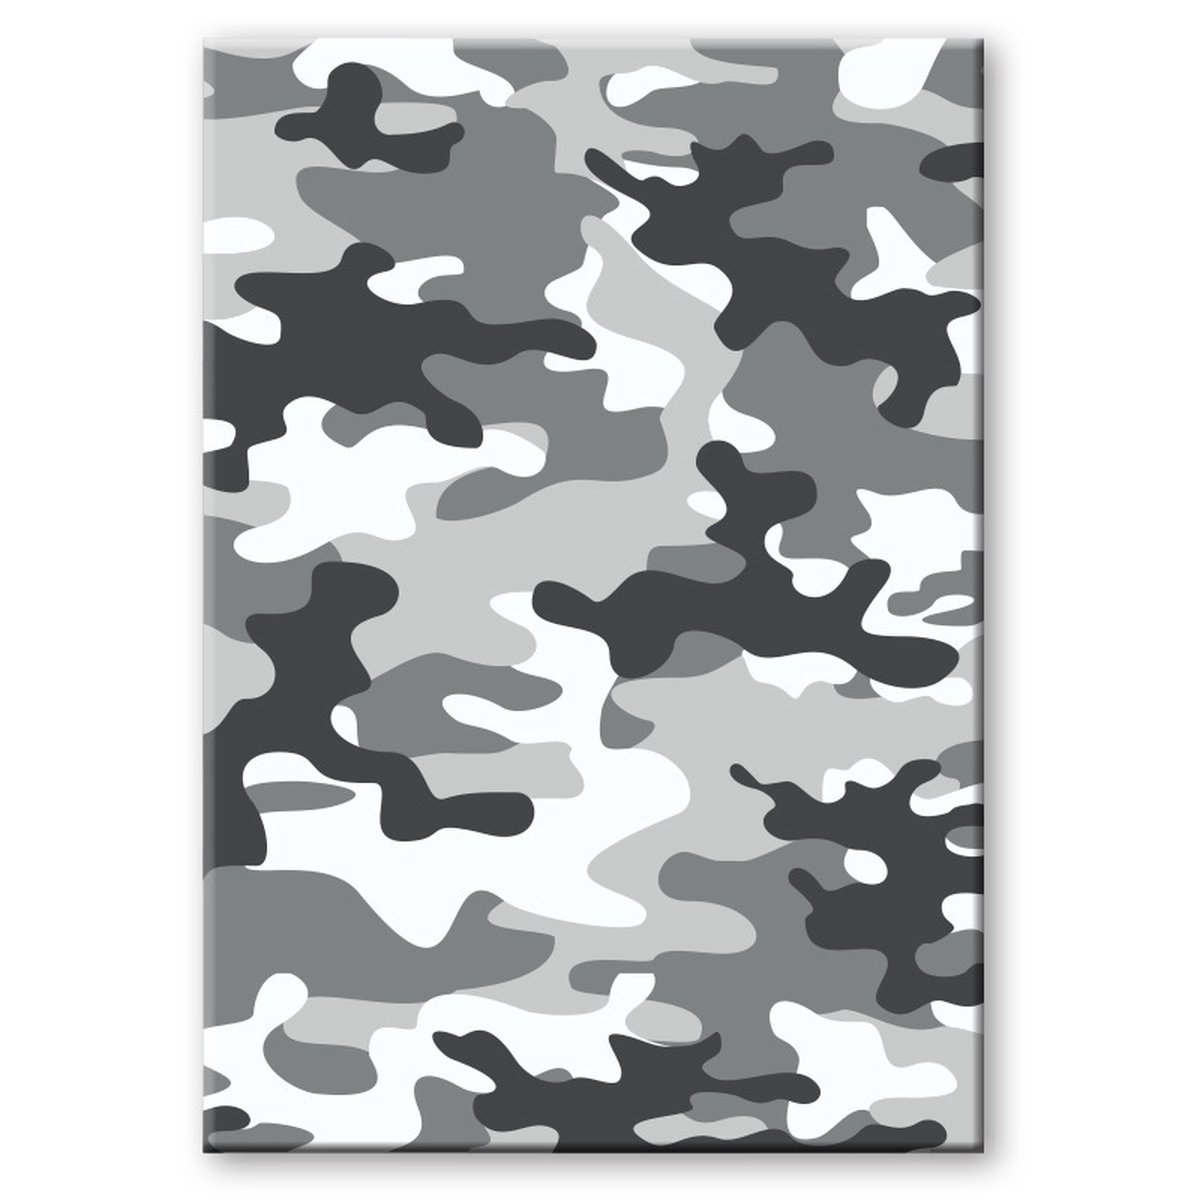 Camouflage/legerprint Luxe Schrift/notitieboek Gelinieerd A4 Formaat - Notitieboek - Grijs